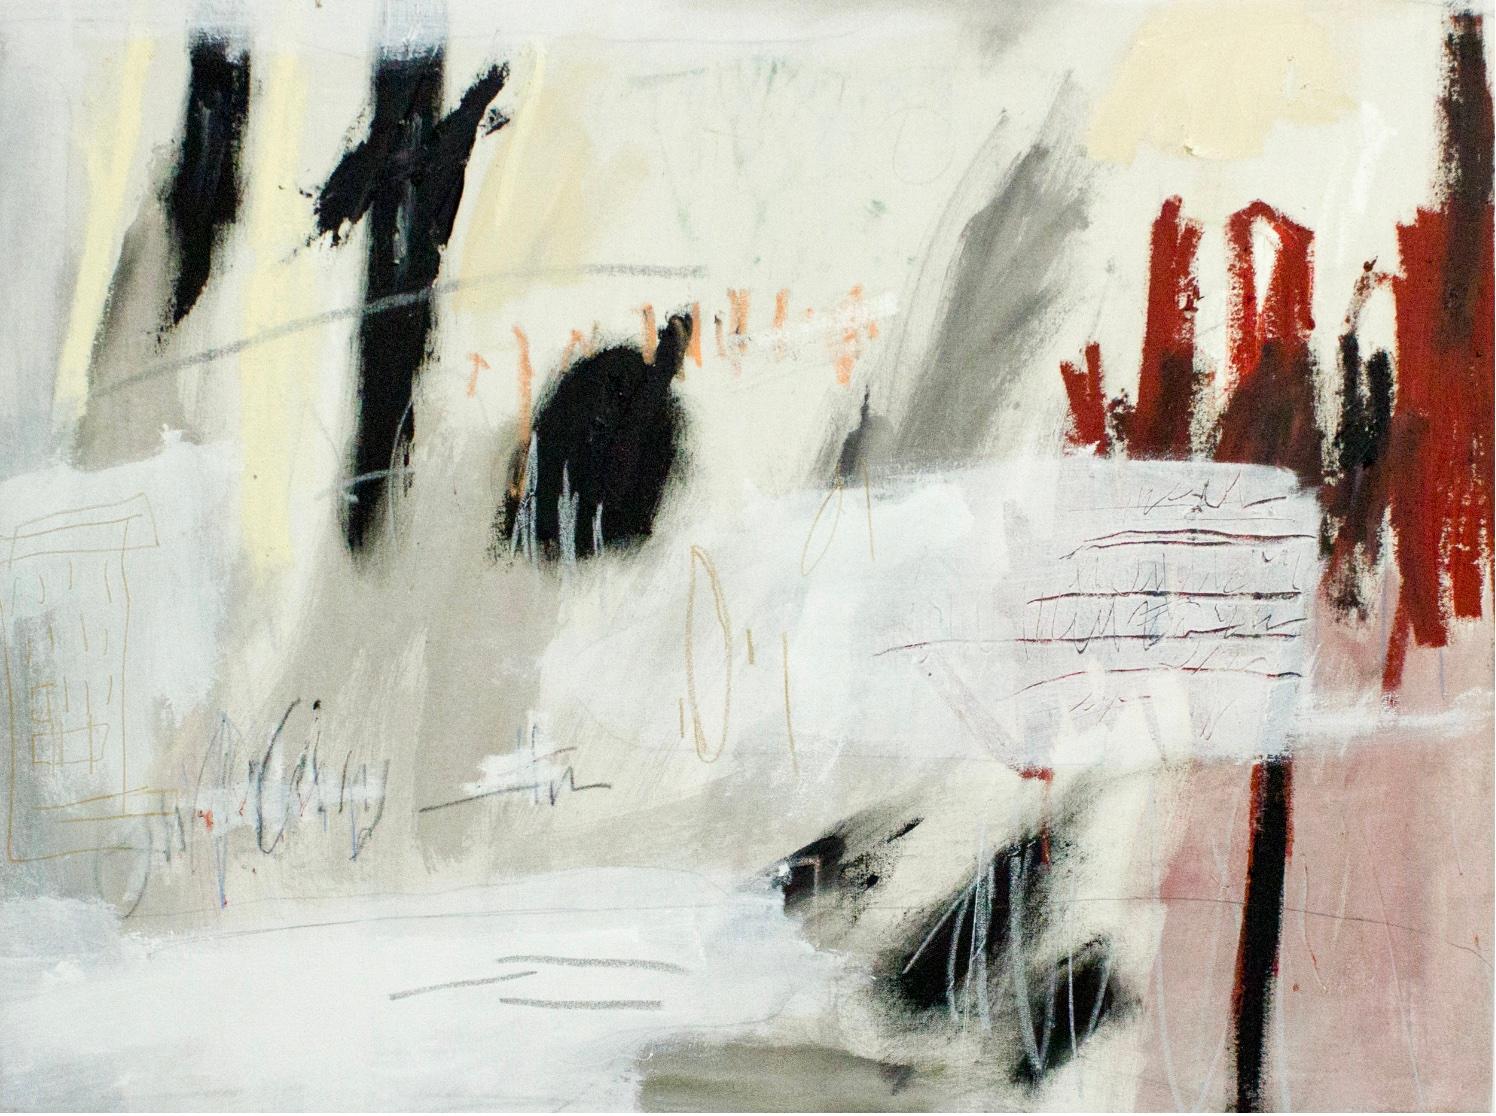 Abstract Painting Brian Jerome - Combien honntement nous avons essay d'apprendre, mais nous oublierons